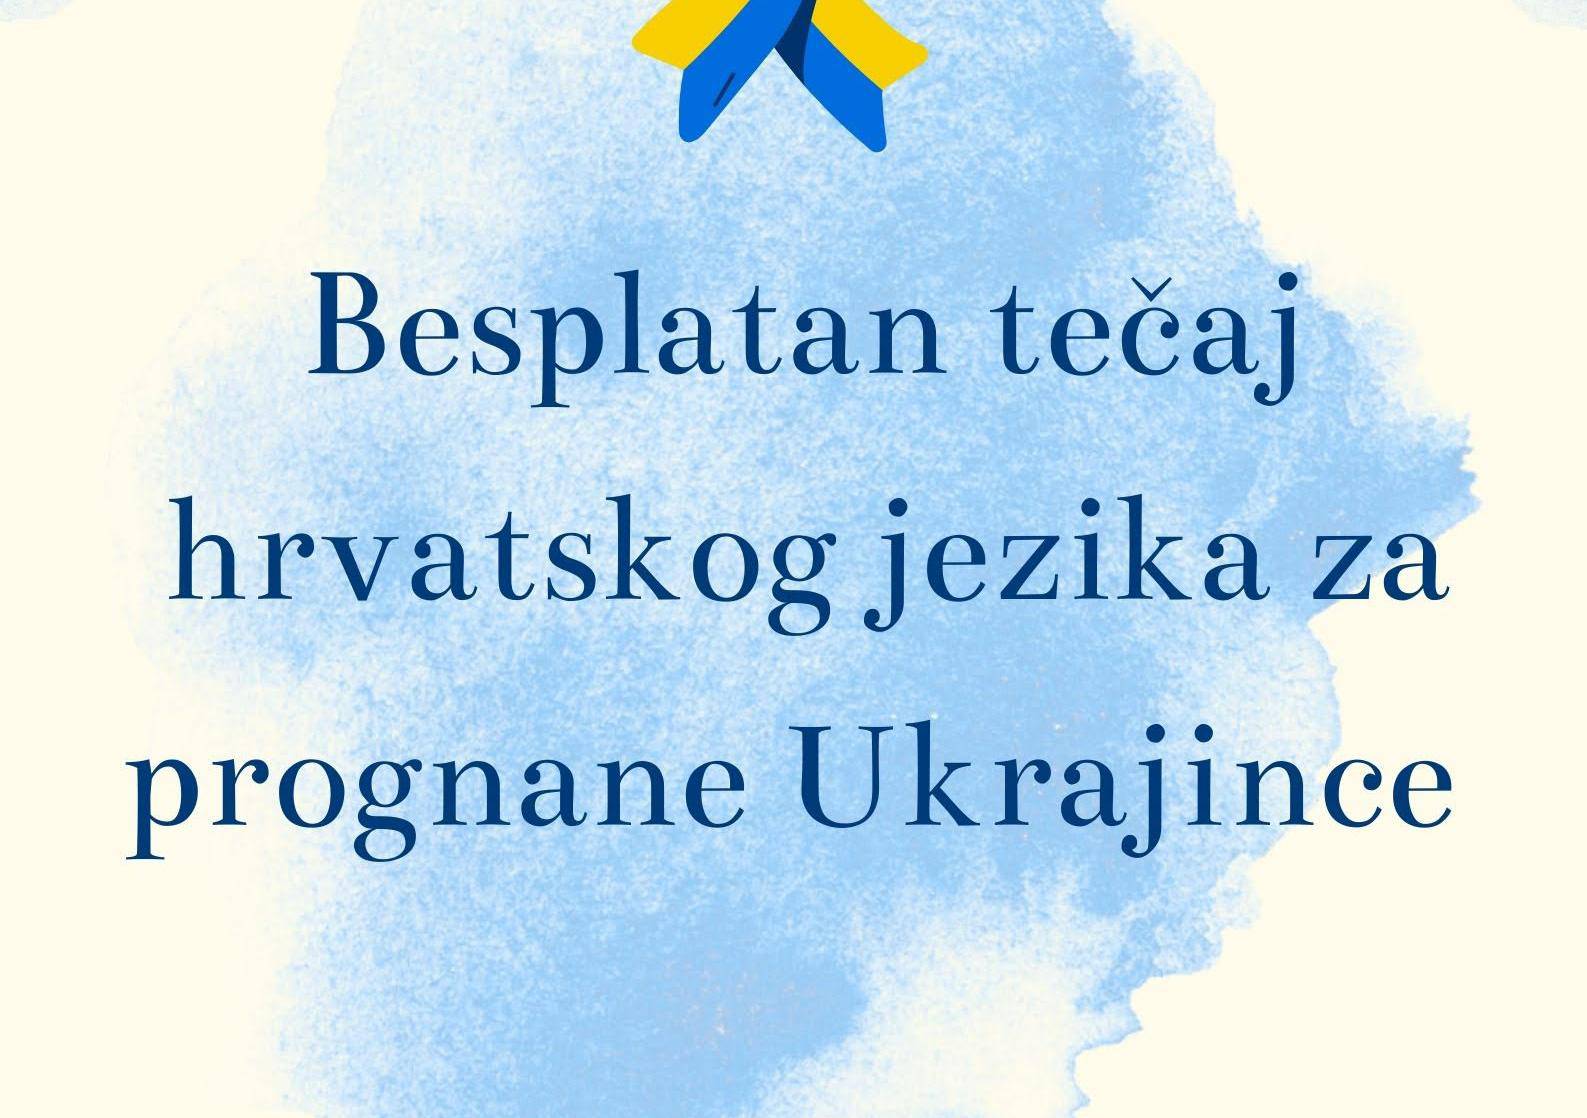 Besplatni tečaj hrvatskog jezika za Ukrajince u Sesvetama